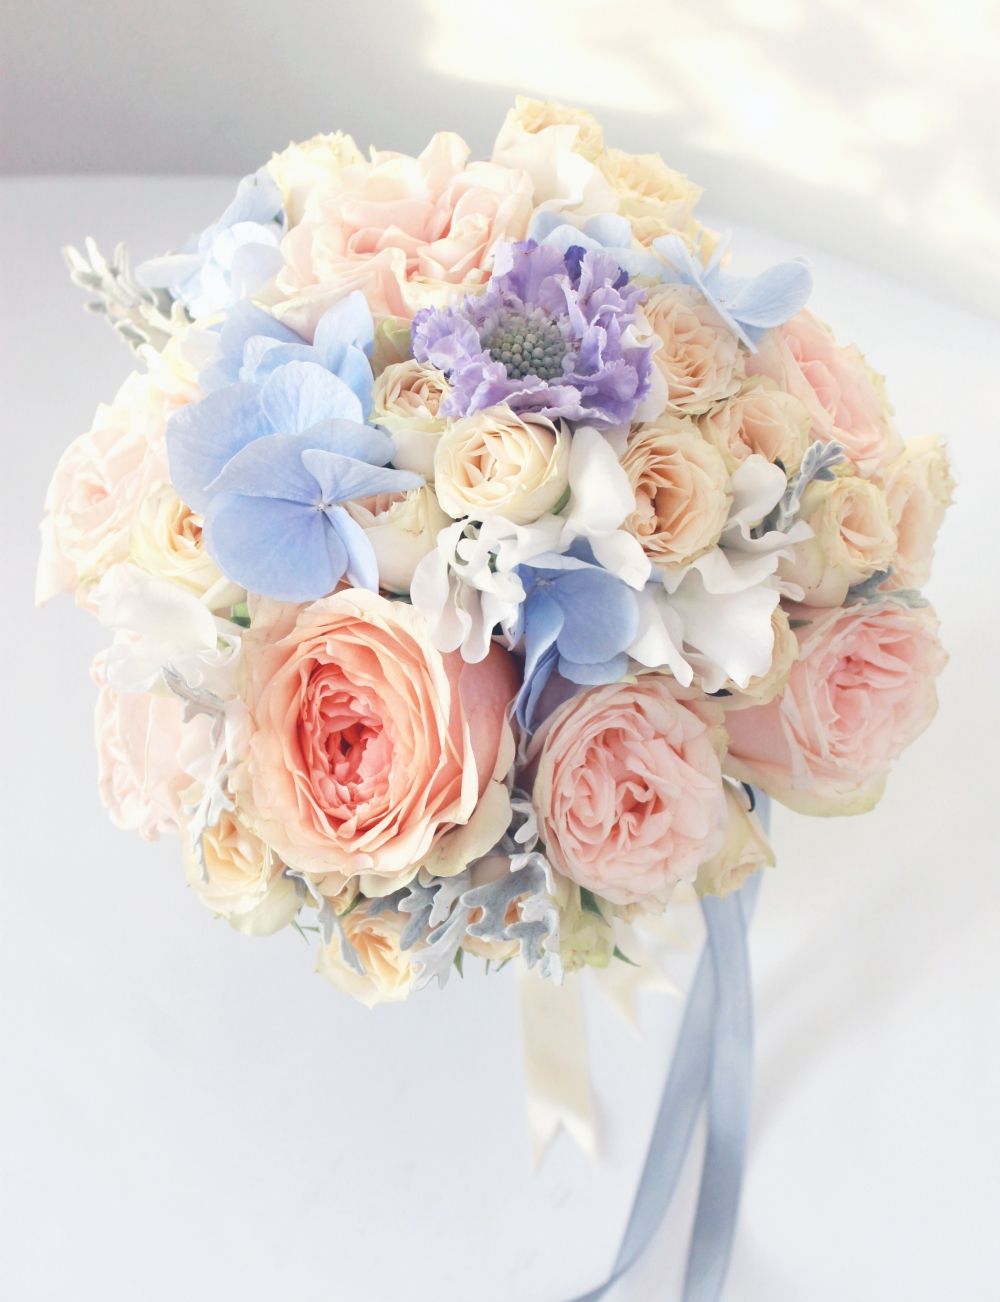 Воздушный букет для невесты Ирины
florist: Надежда Бобровская